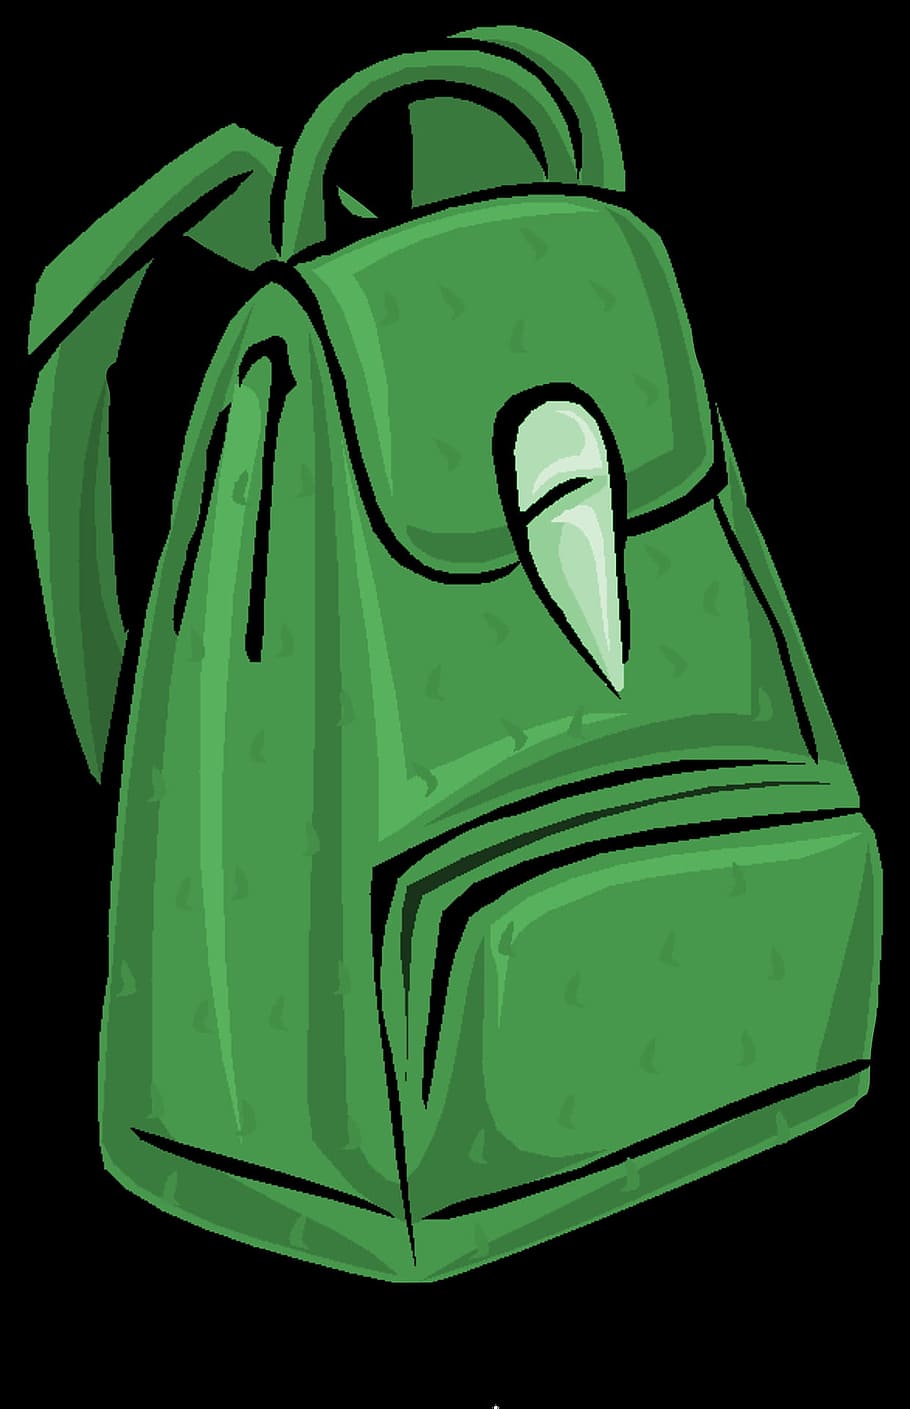 green, bag, backpack, graphic, sport, green color, black background, close-up, studio shot, indoors